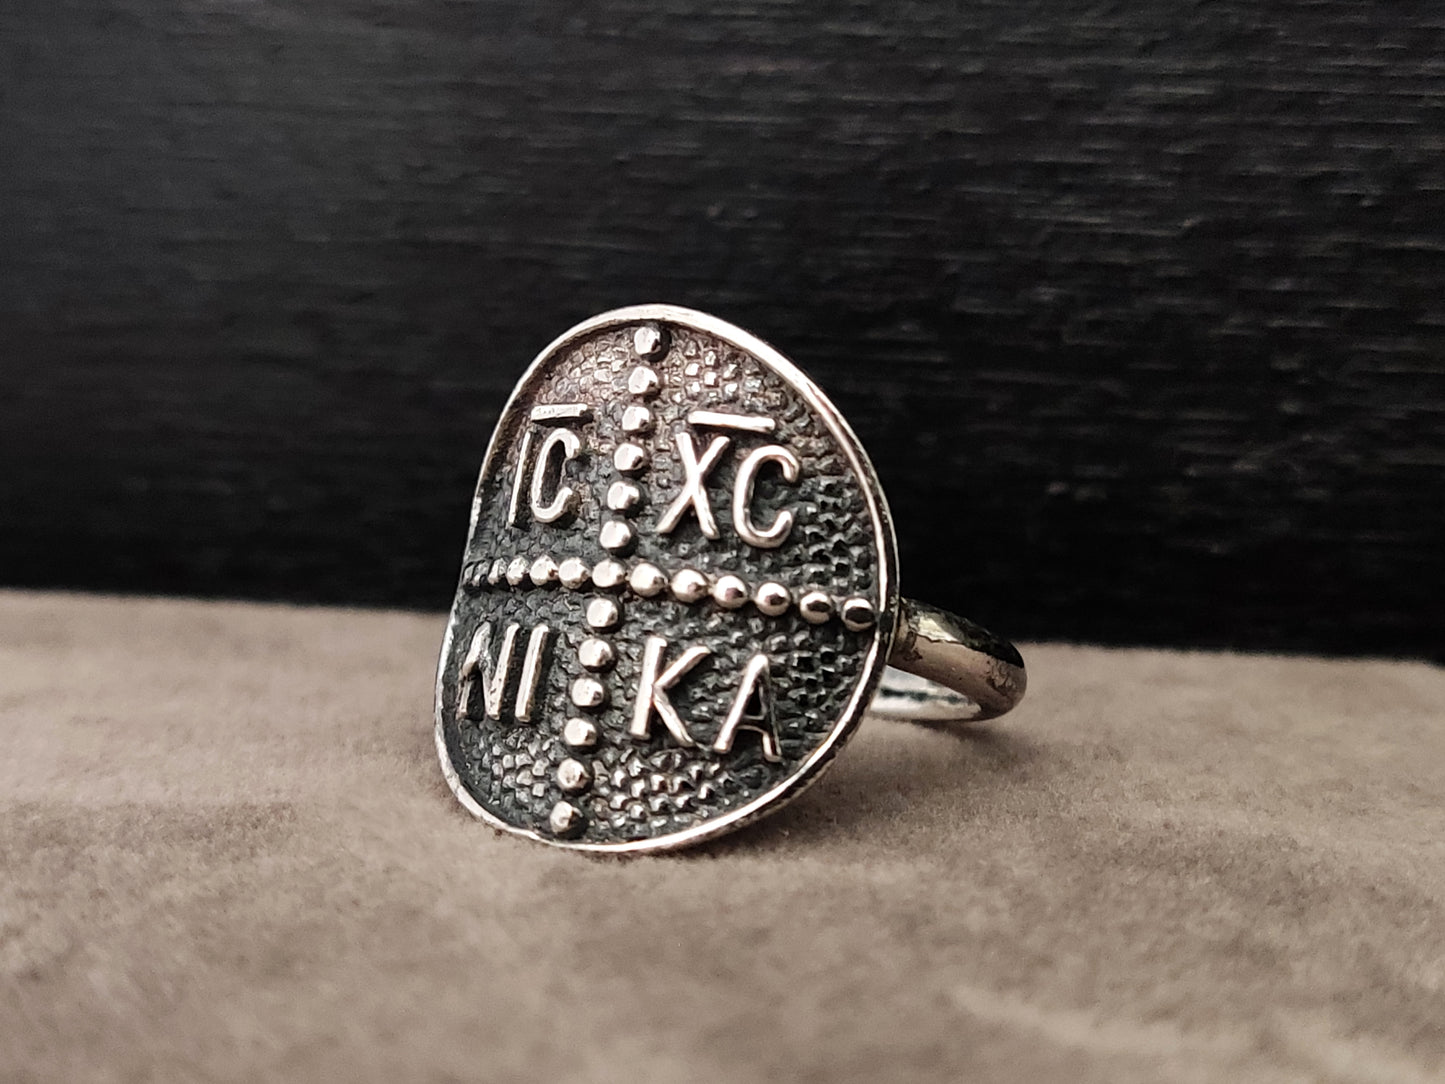 Bague en argent avec croix grecque byzantine ICXC NIKA 19 mm